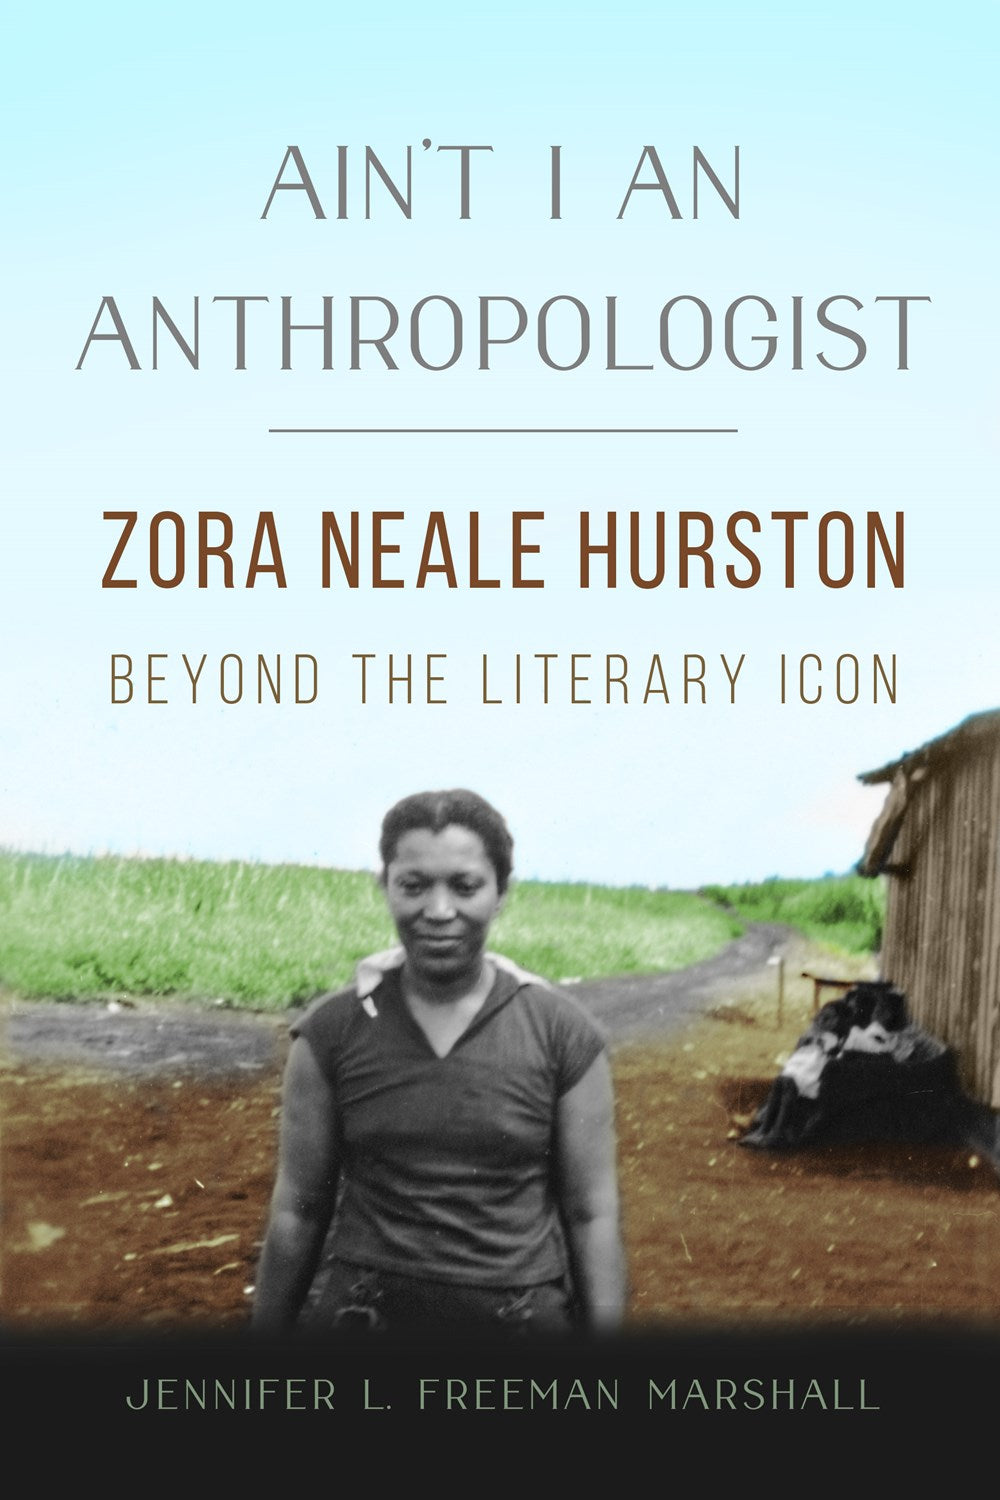 Ain't I an Anthropologist: Zora Neale Hurston Beyond the Literary Icon